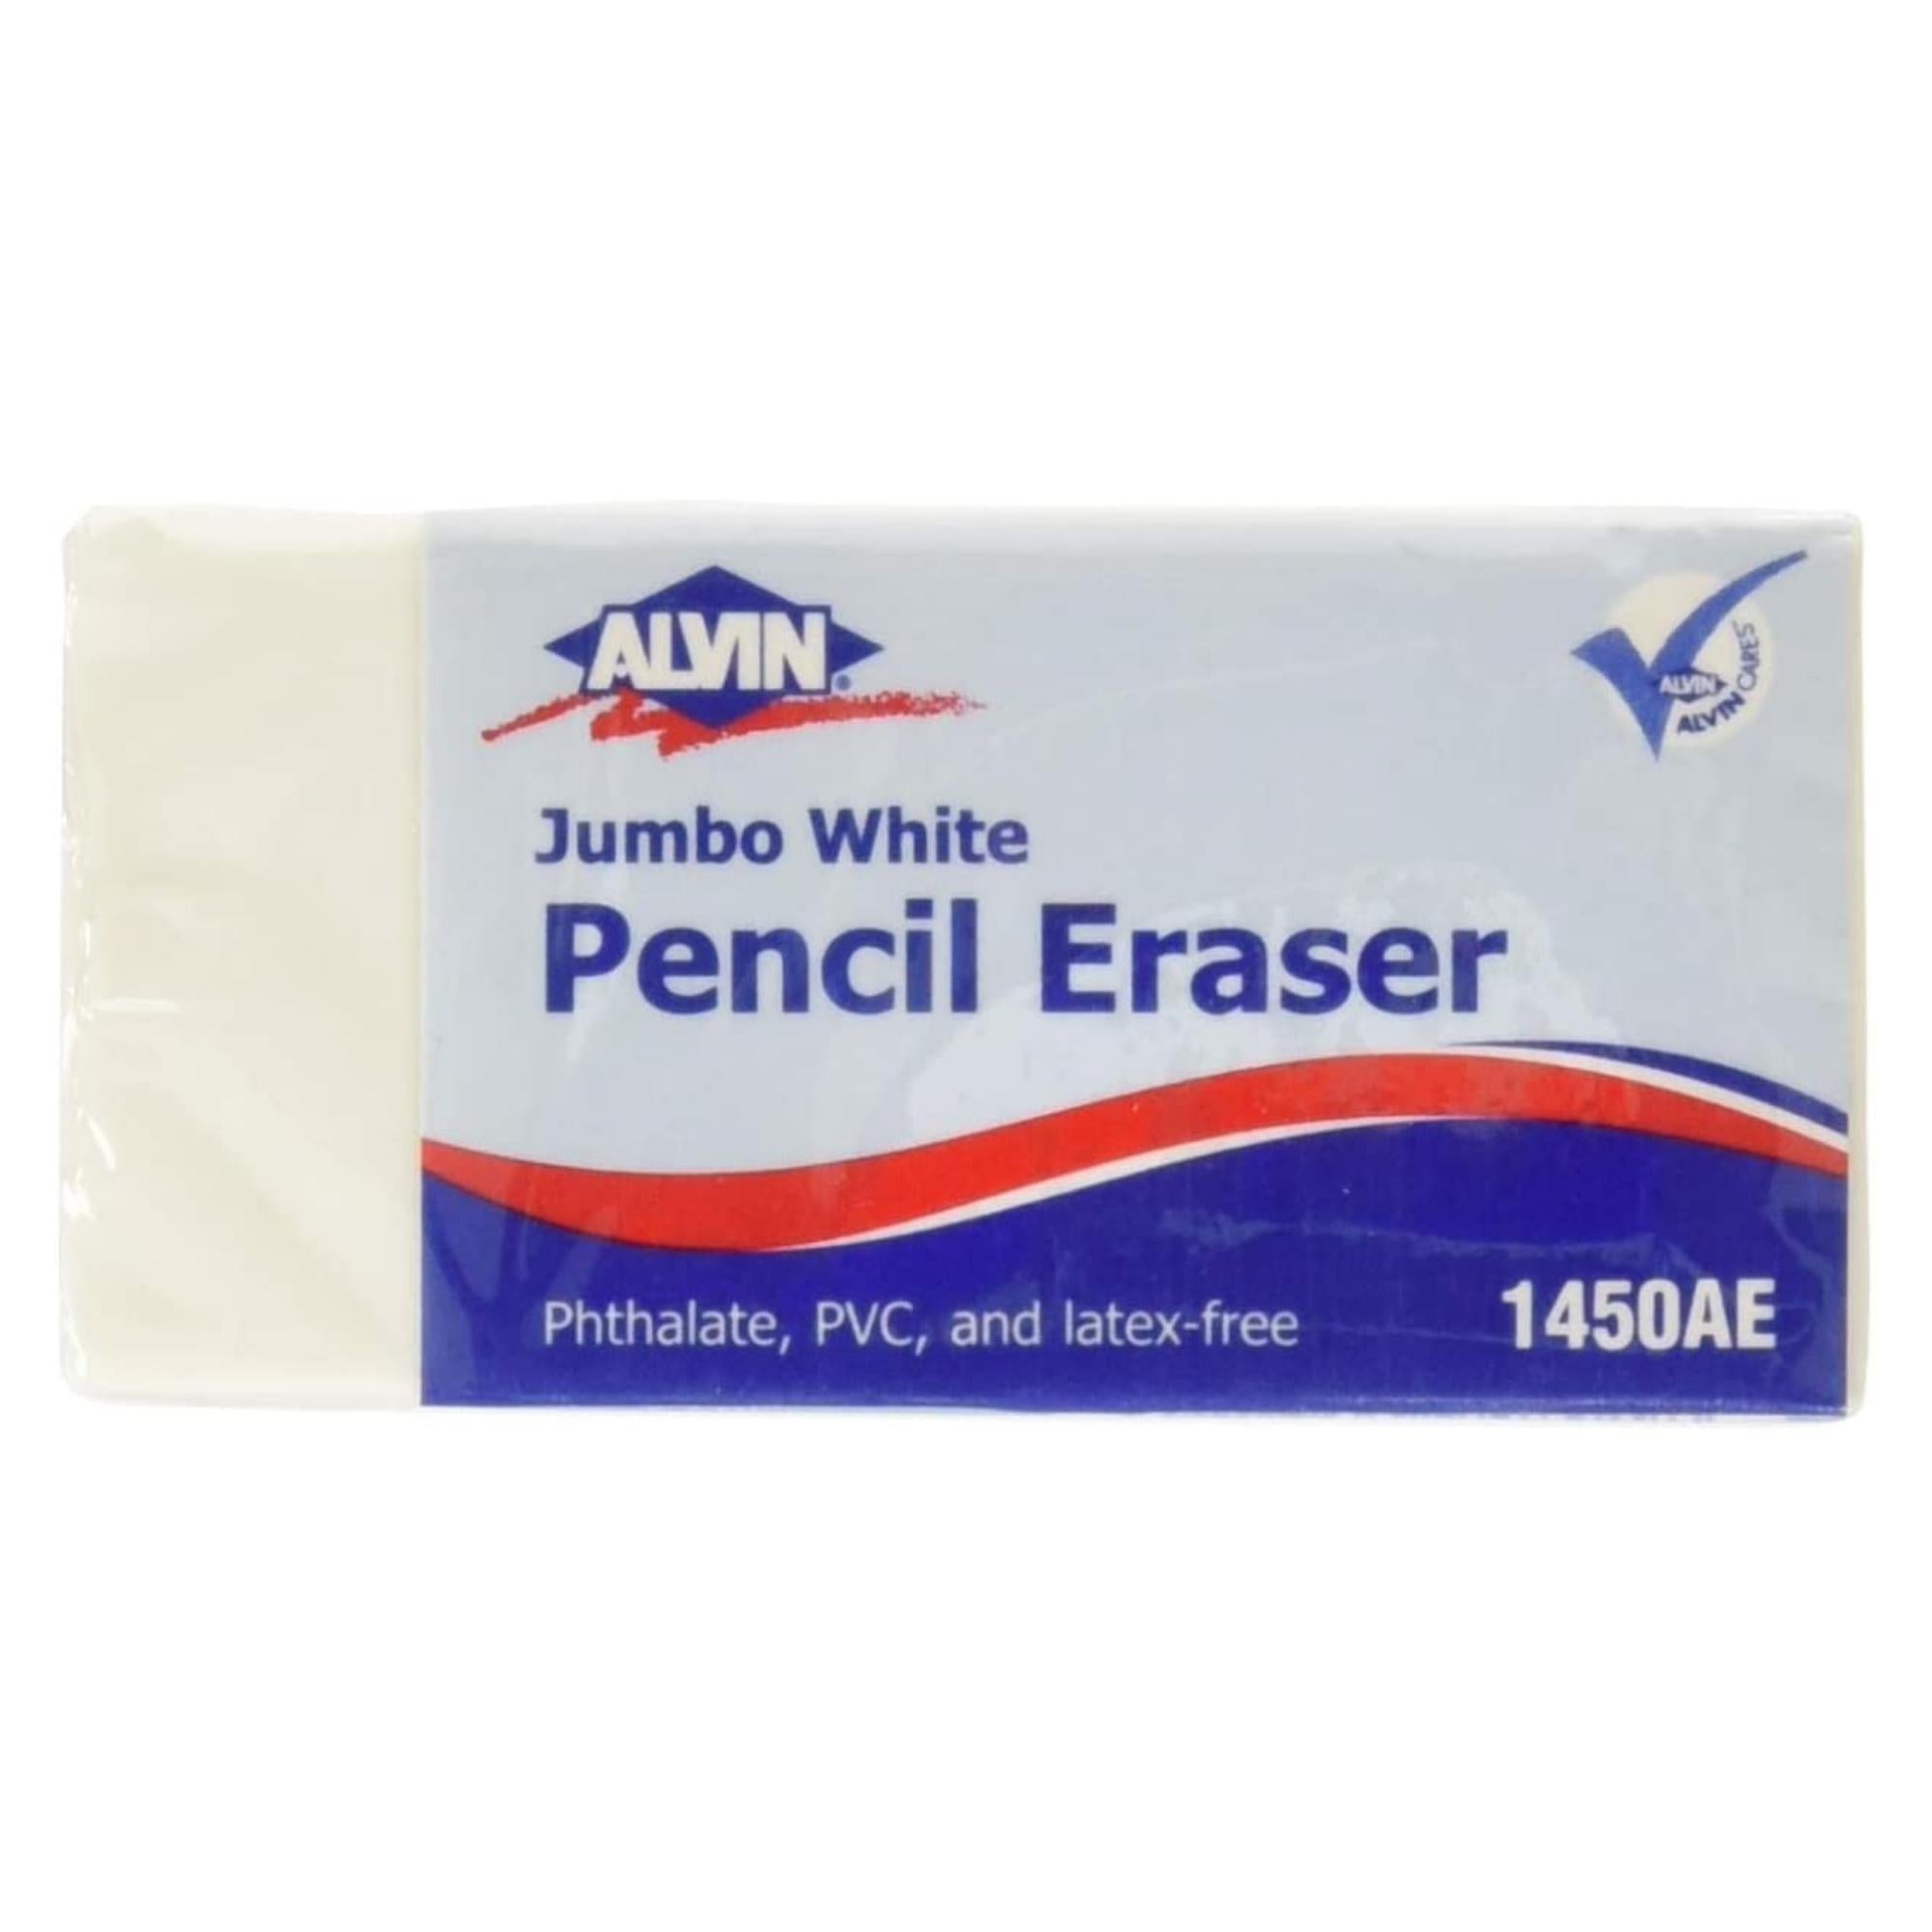 Alvin 1410AE White Vinyl Pencil Eraser 20pc